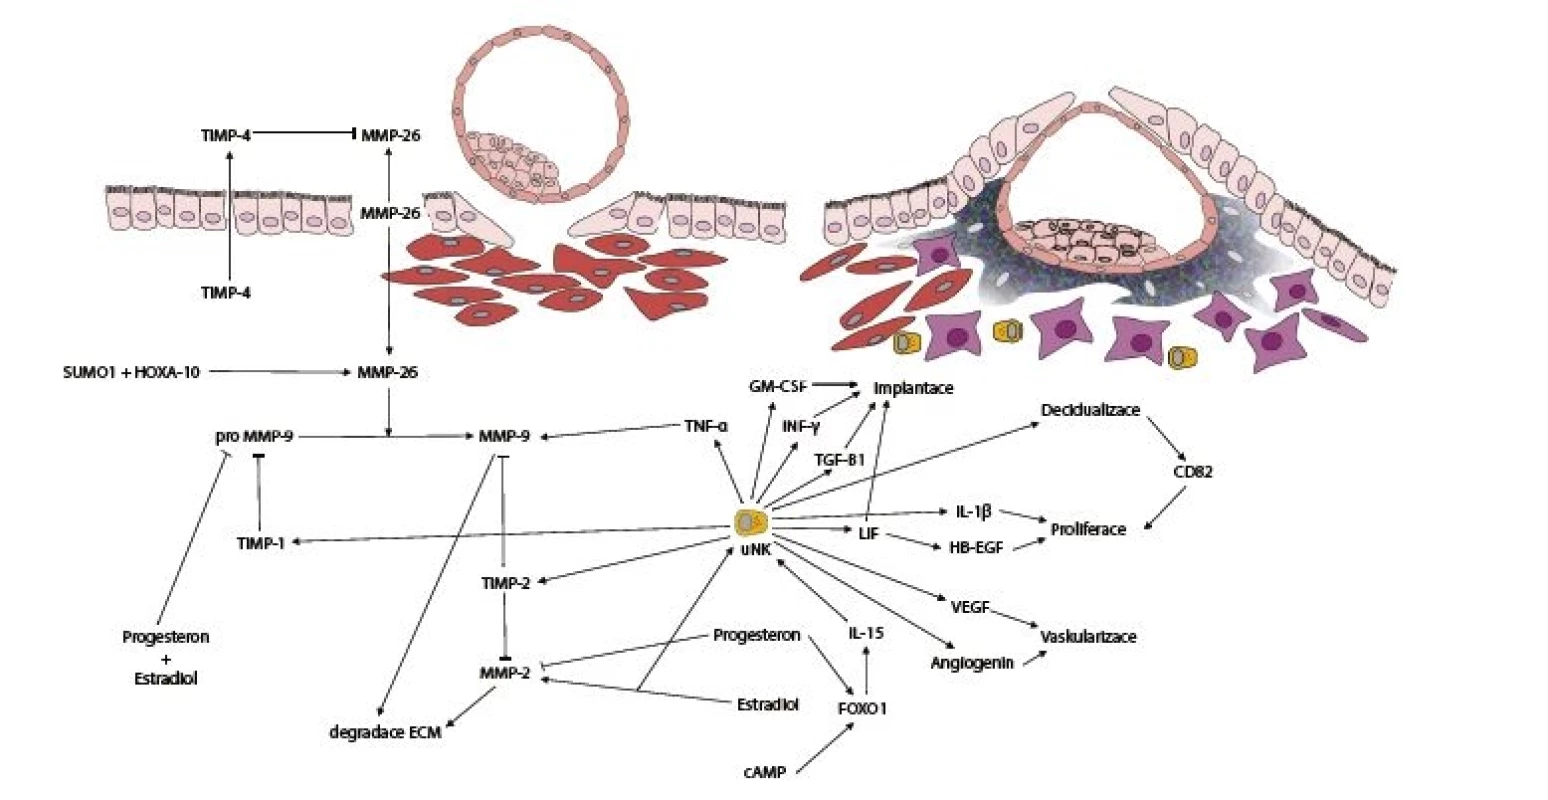 Schéma regulace metaloproteináz (MMP) v závislosti na procesech decidualizace a implantace regulovaných uNK buňkami